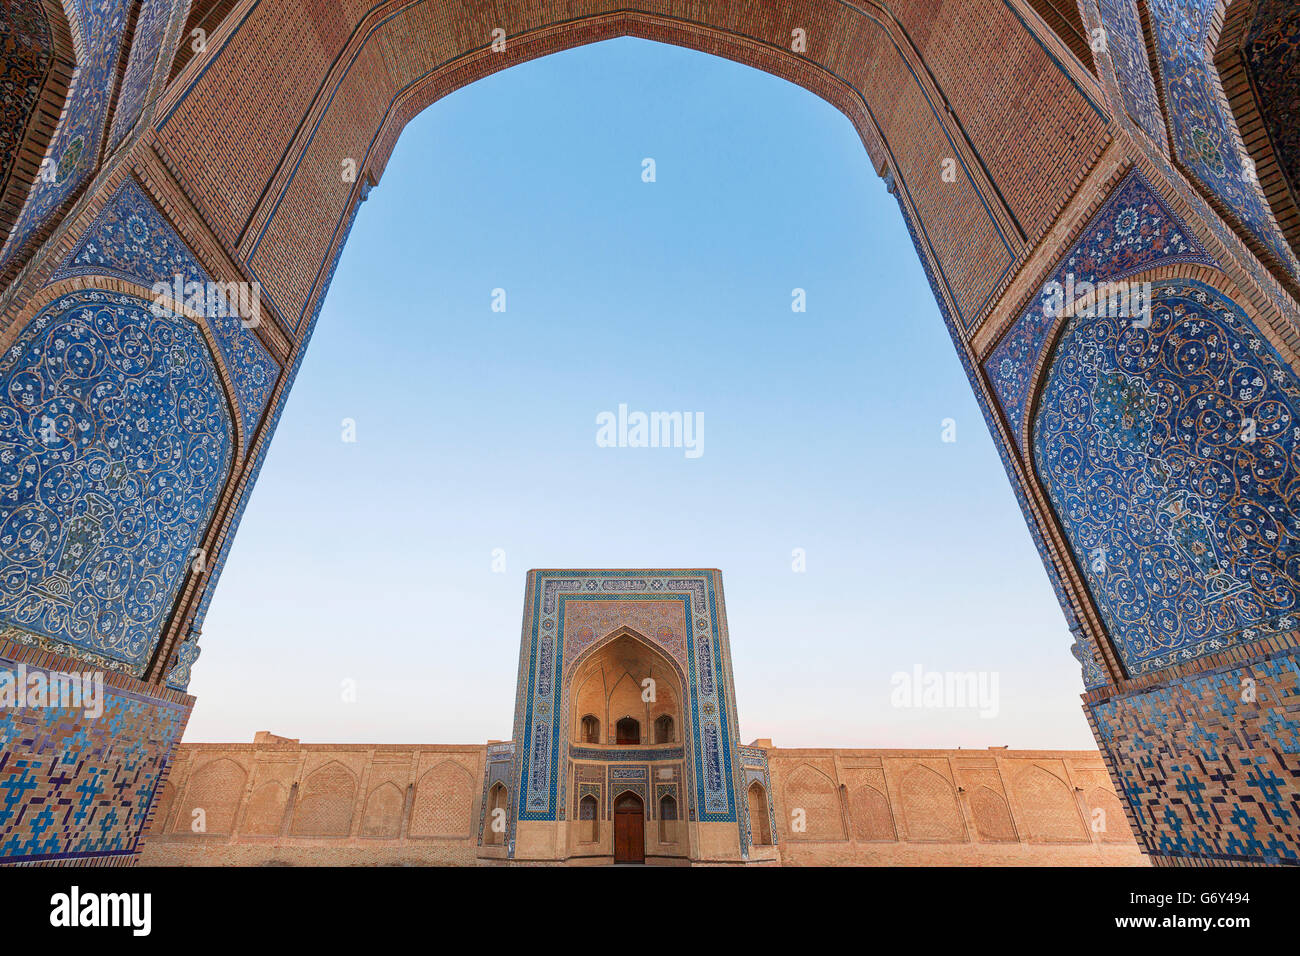 Das Tor der Moschee durch den Bogen des Poi Kalon Madrasah in Buchara, Usbekistan. Stockfoto